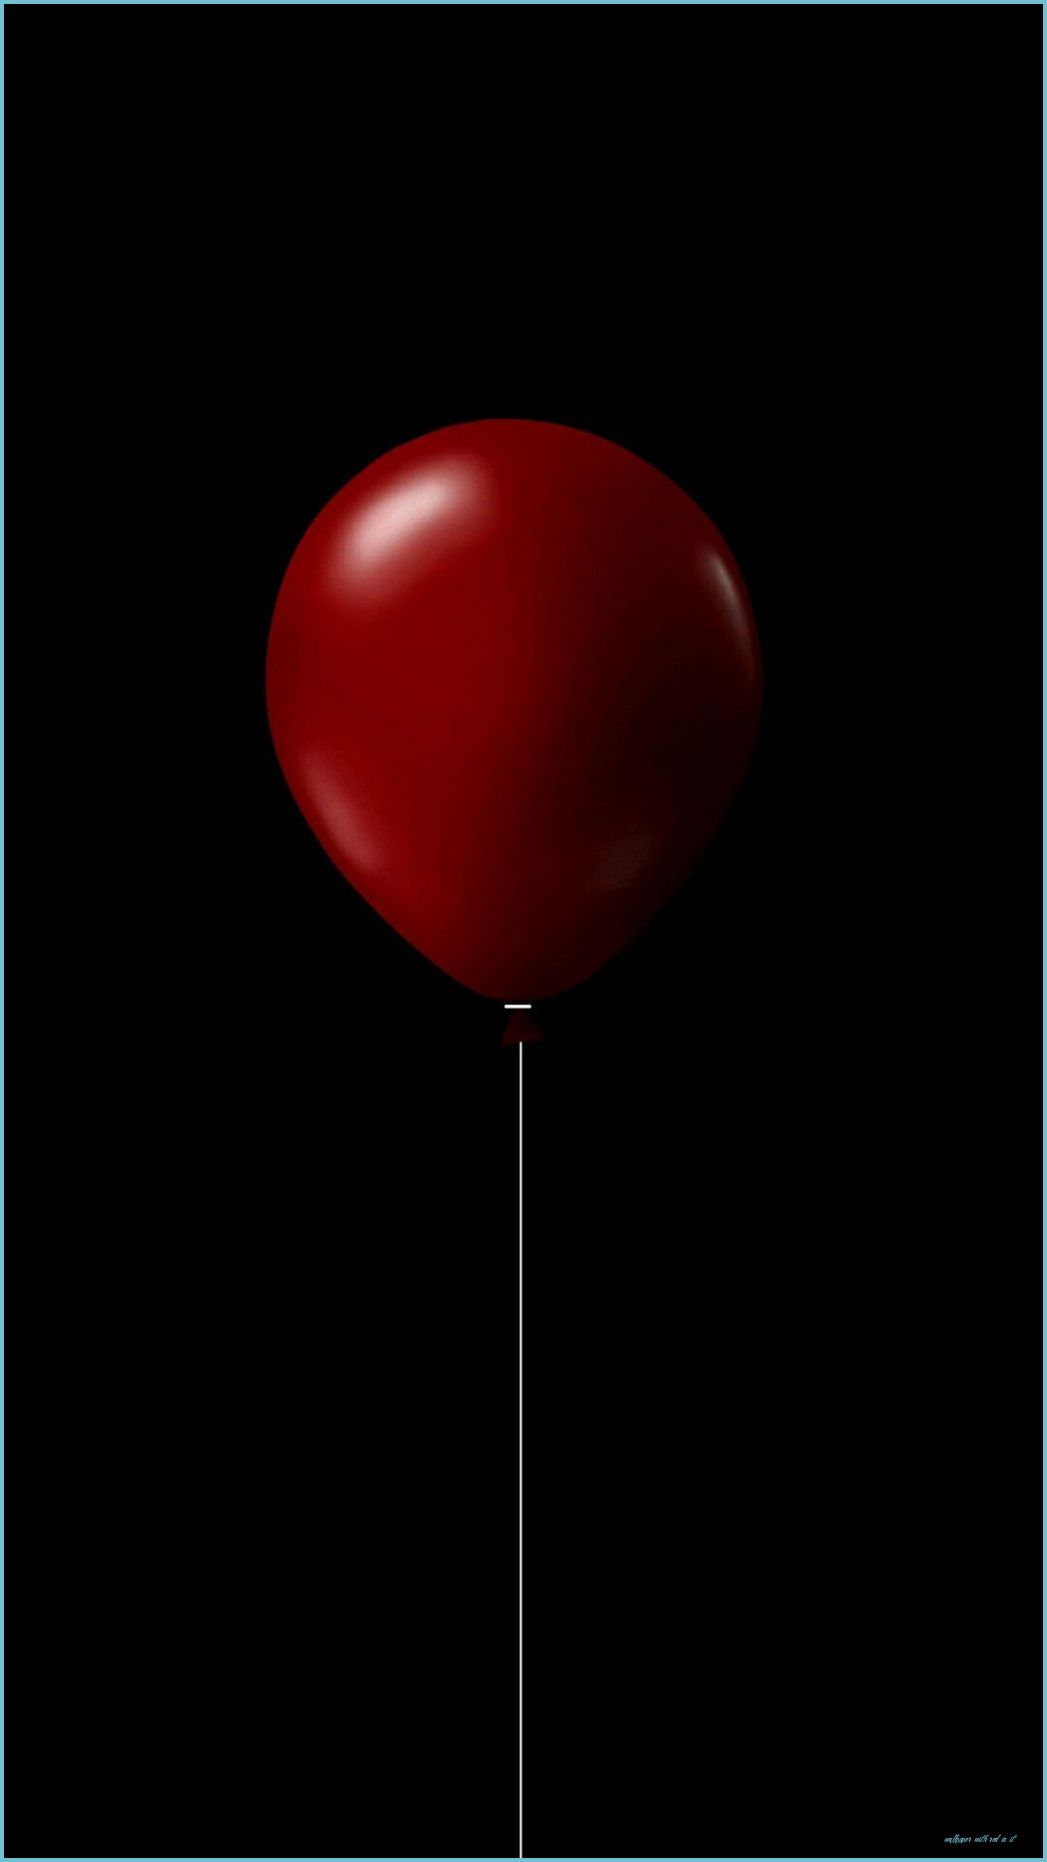  Luftballons Hintergrundbild 1047x1862. Aesthetic Balloons Wallpaper